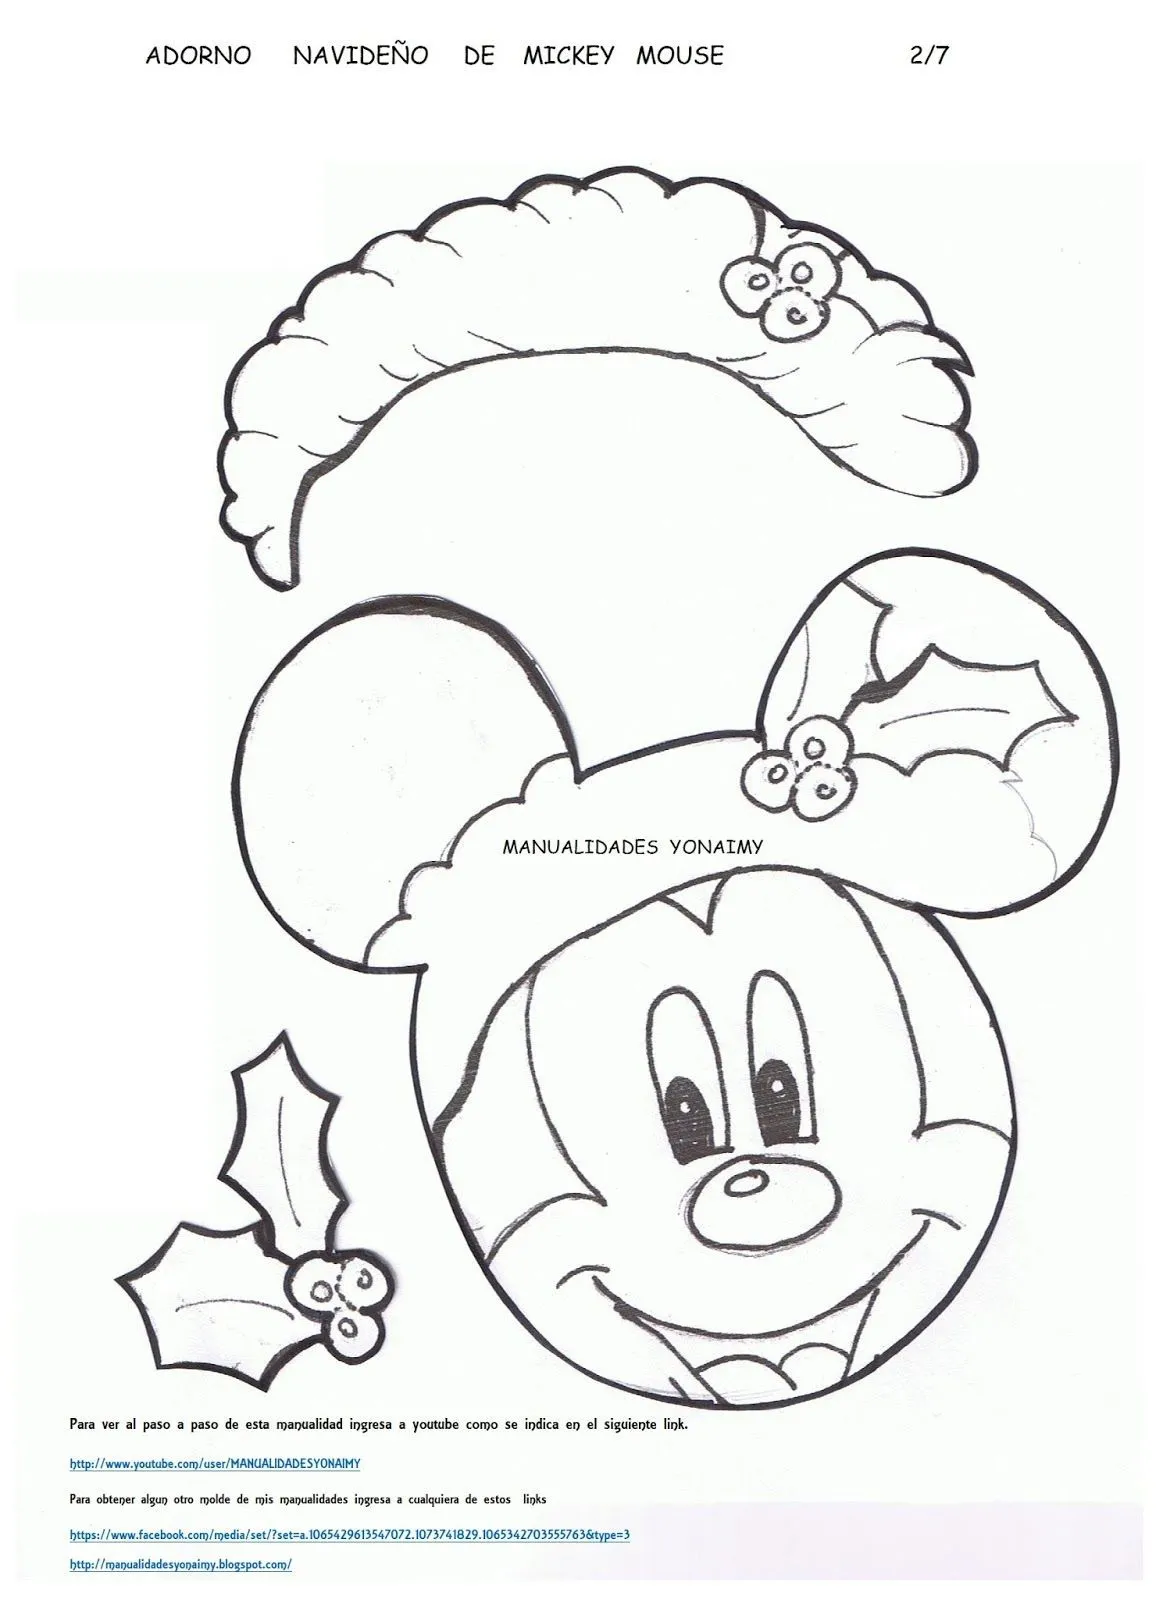 ADORNO NAVIDEÑO DE MICKEY MOUSE ... | Minnie navideña, Manualidades  yonaimy, Molde de mickey mouse